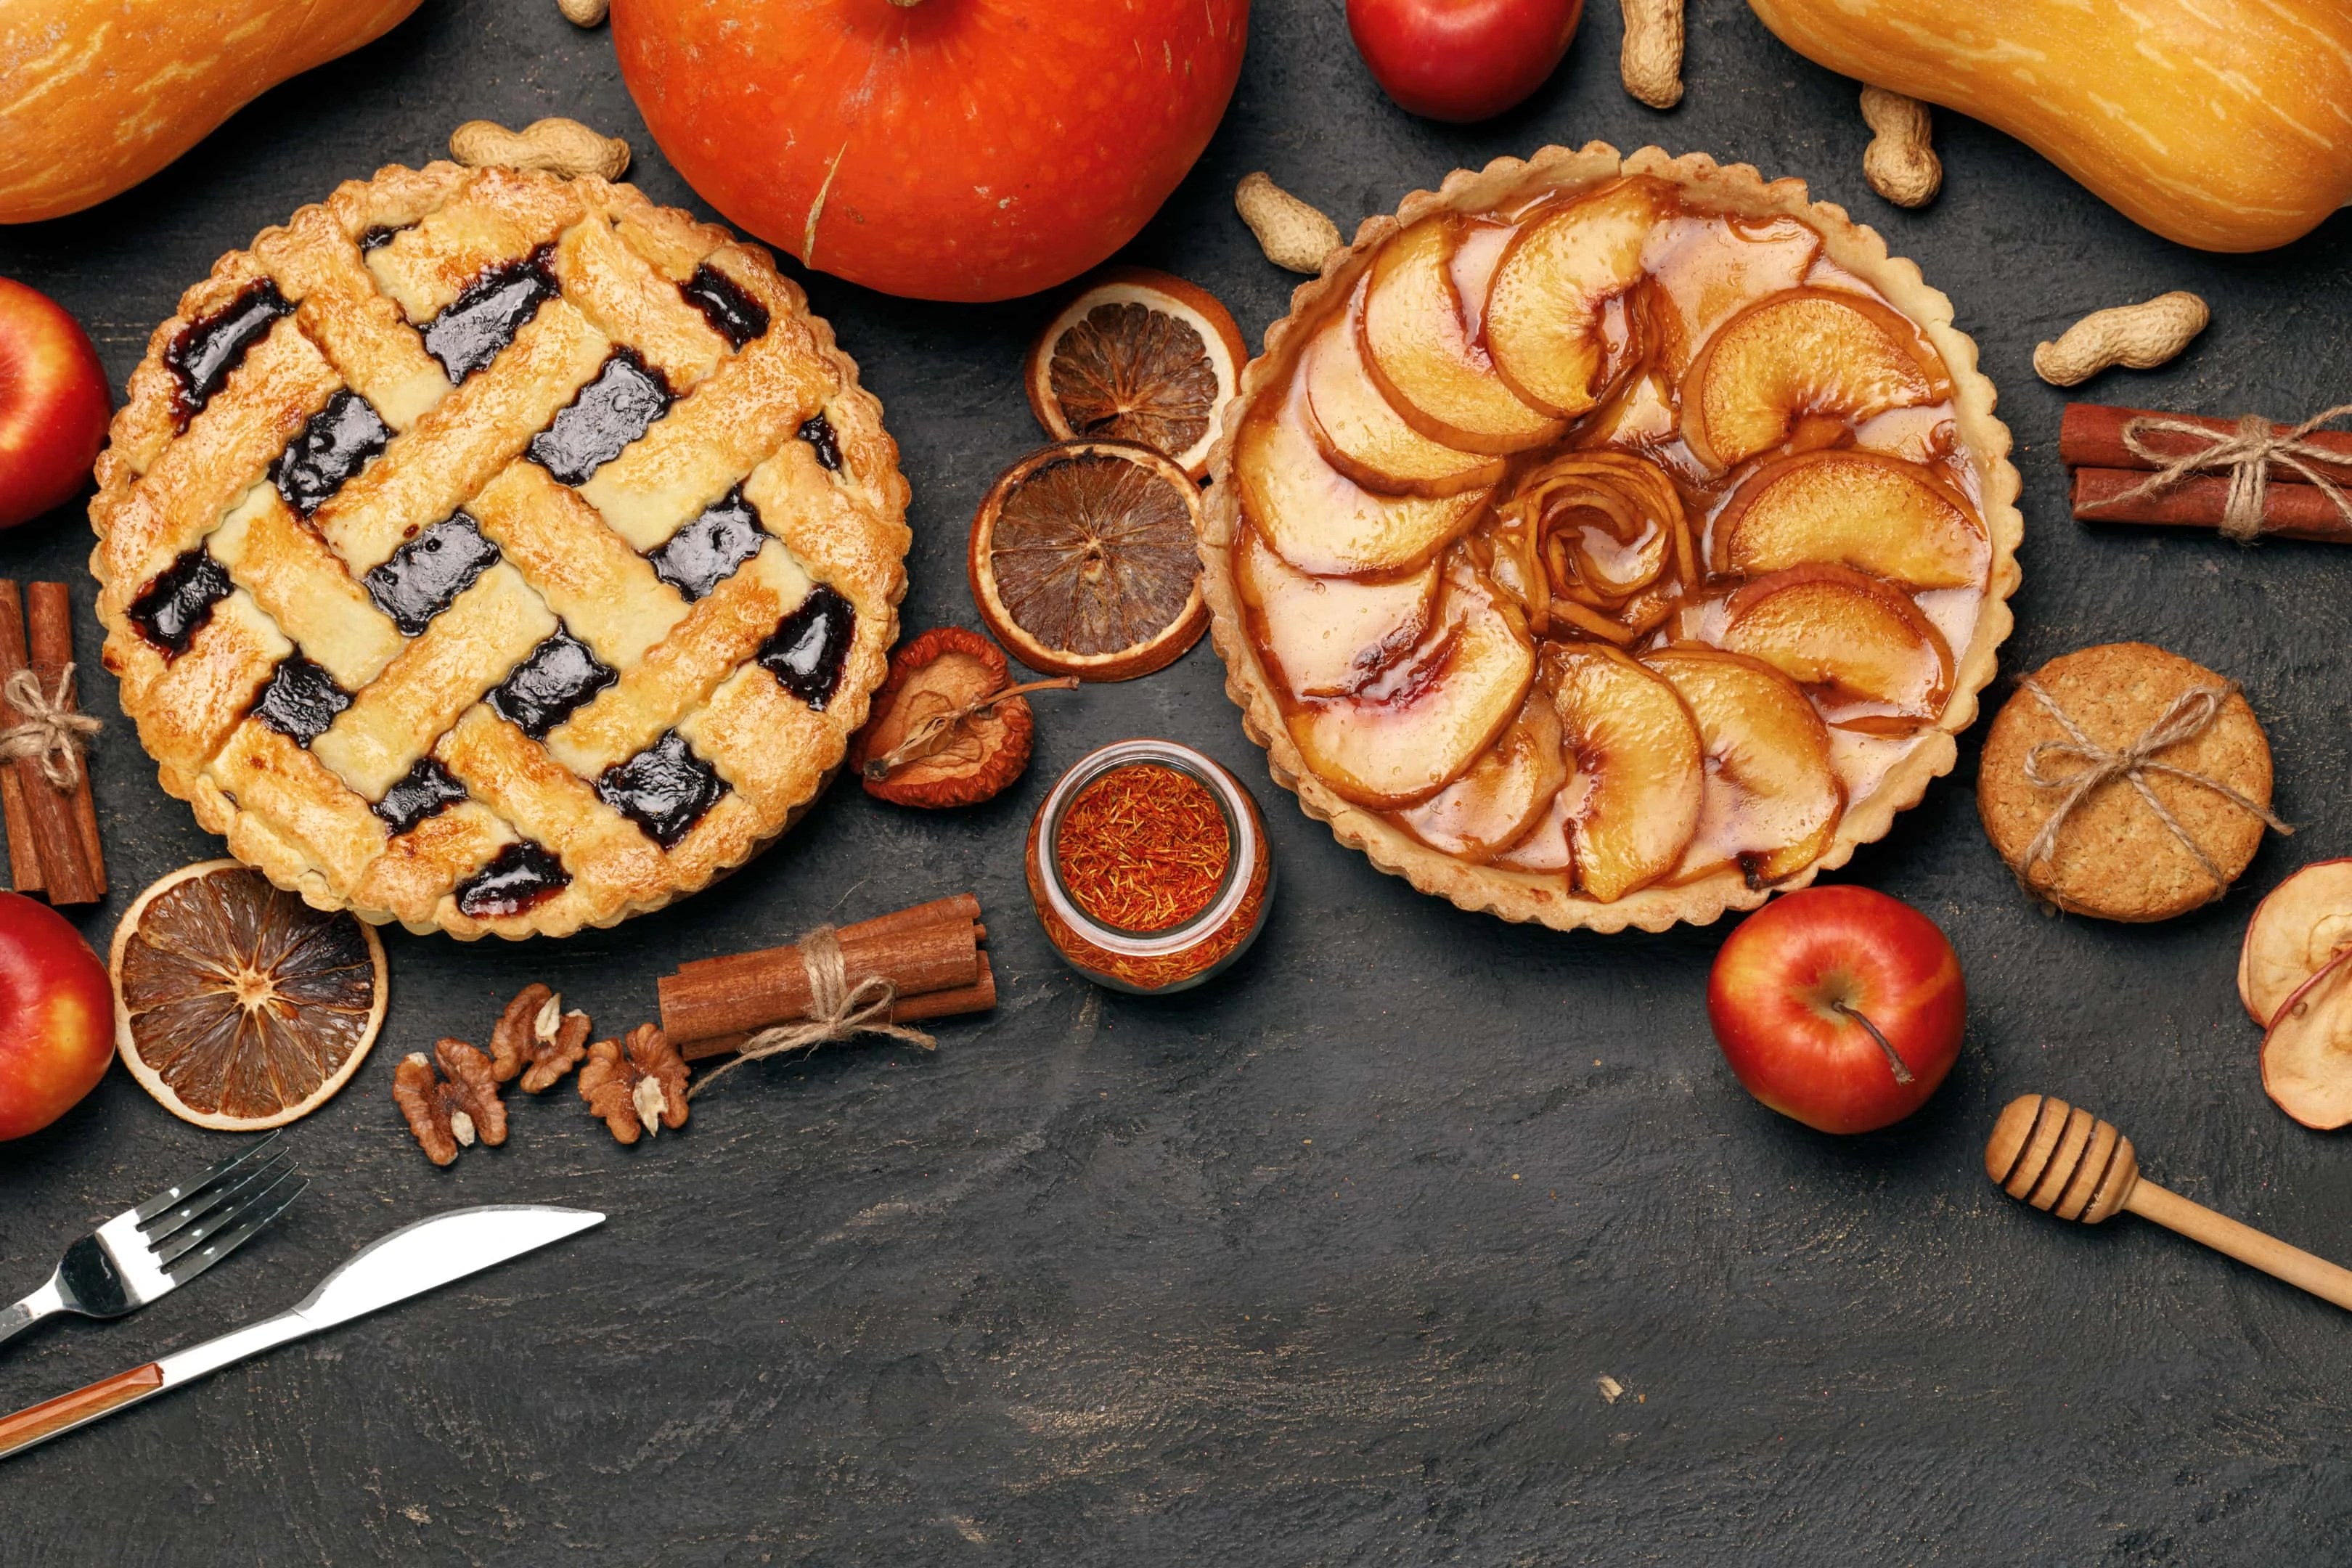 Pumpkin pie and apple pie